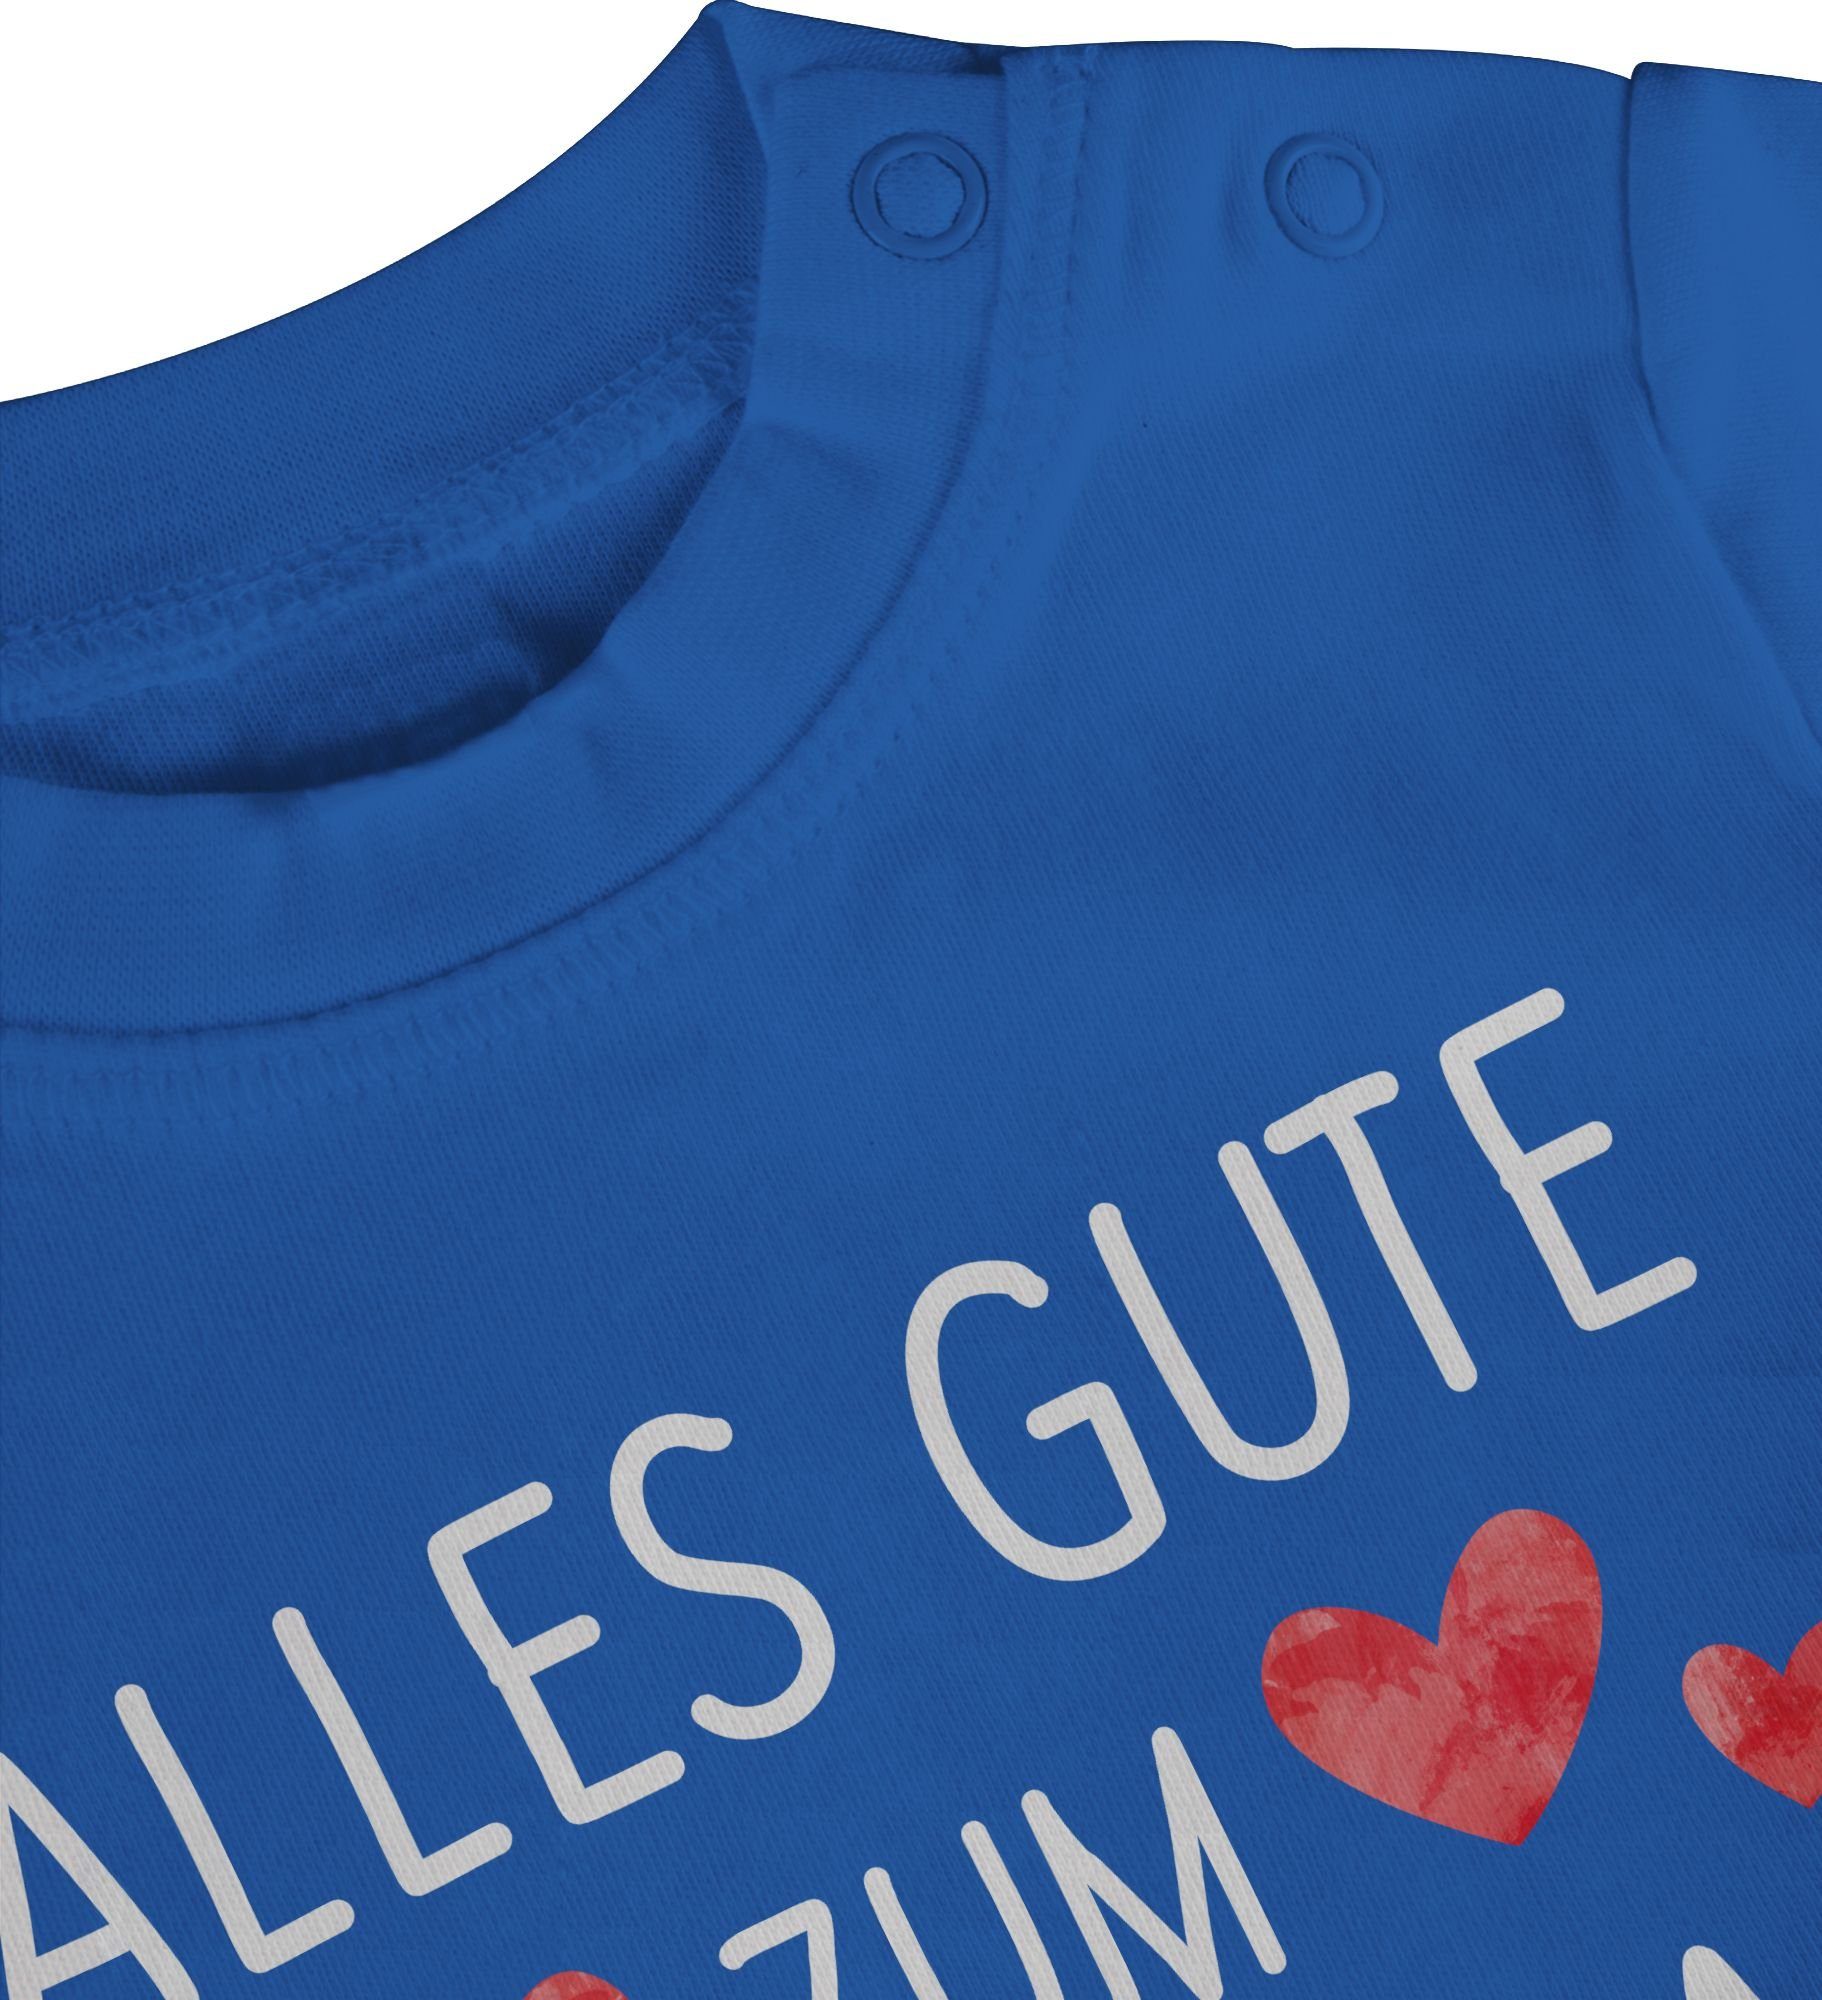 gute Shirtracer Sprüche 1 Geburtstag T-Shirt Mama zum weiß Royalblau Alles Baby